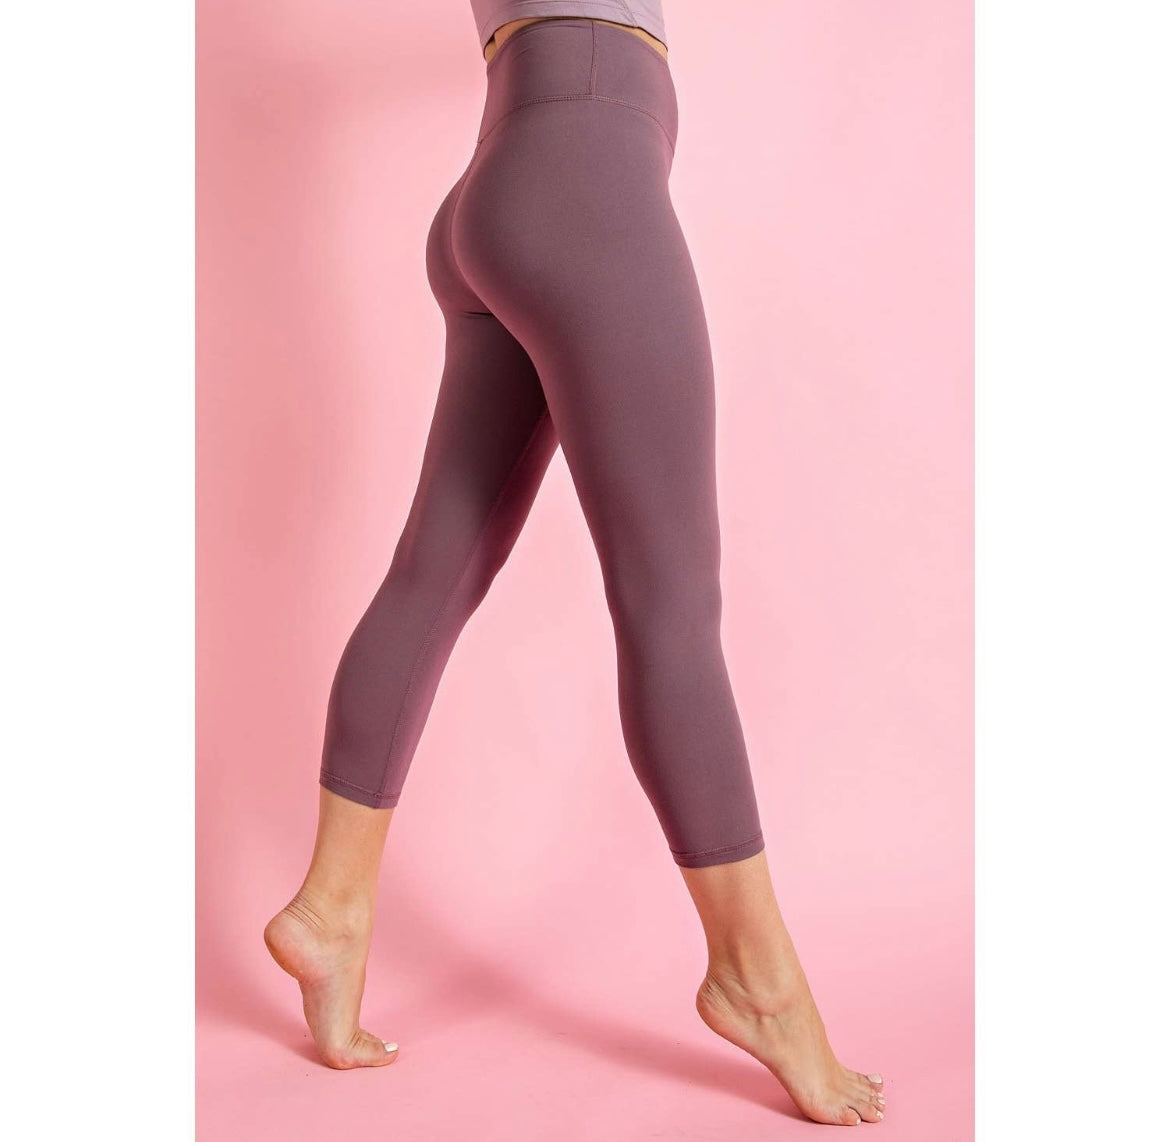 Capri Yoga Leggings - Butter Soft - Multiple Colors!